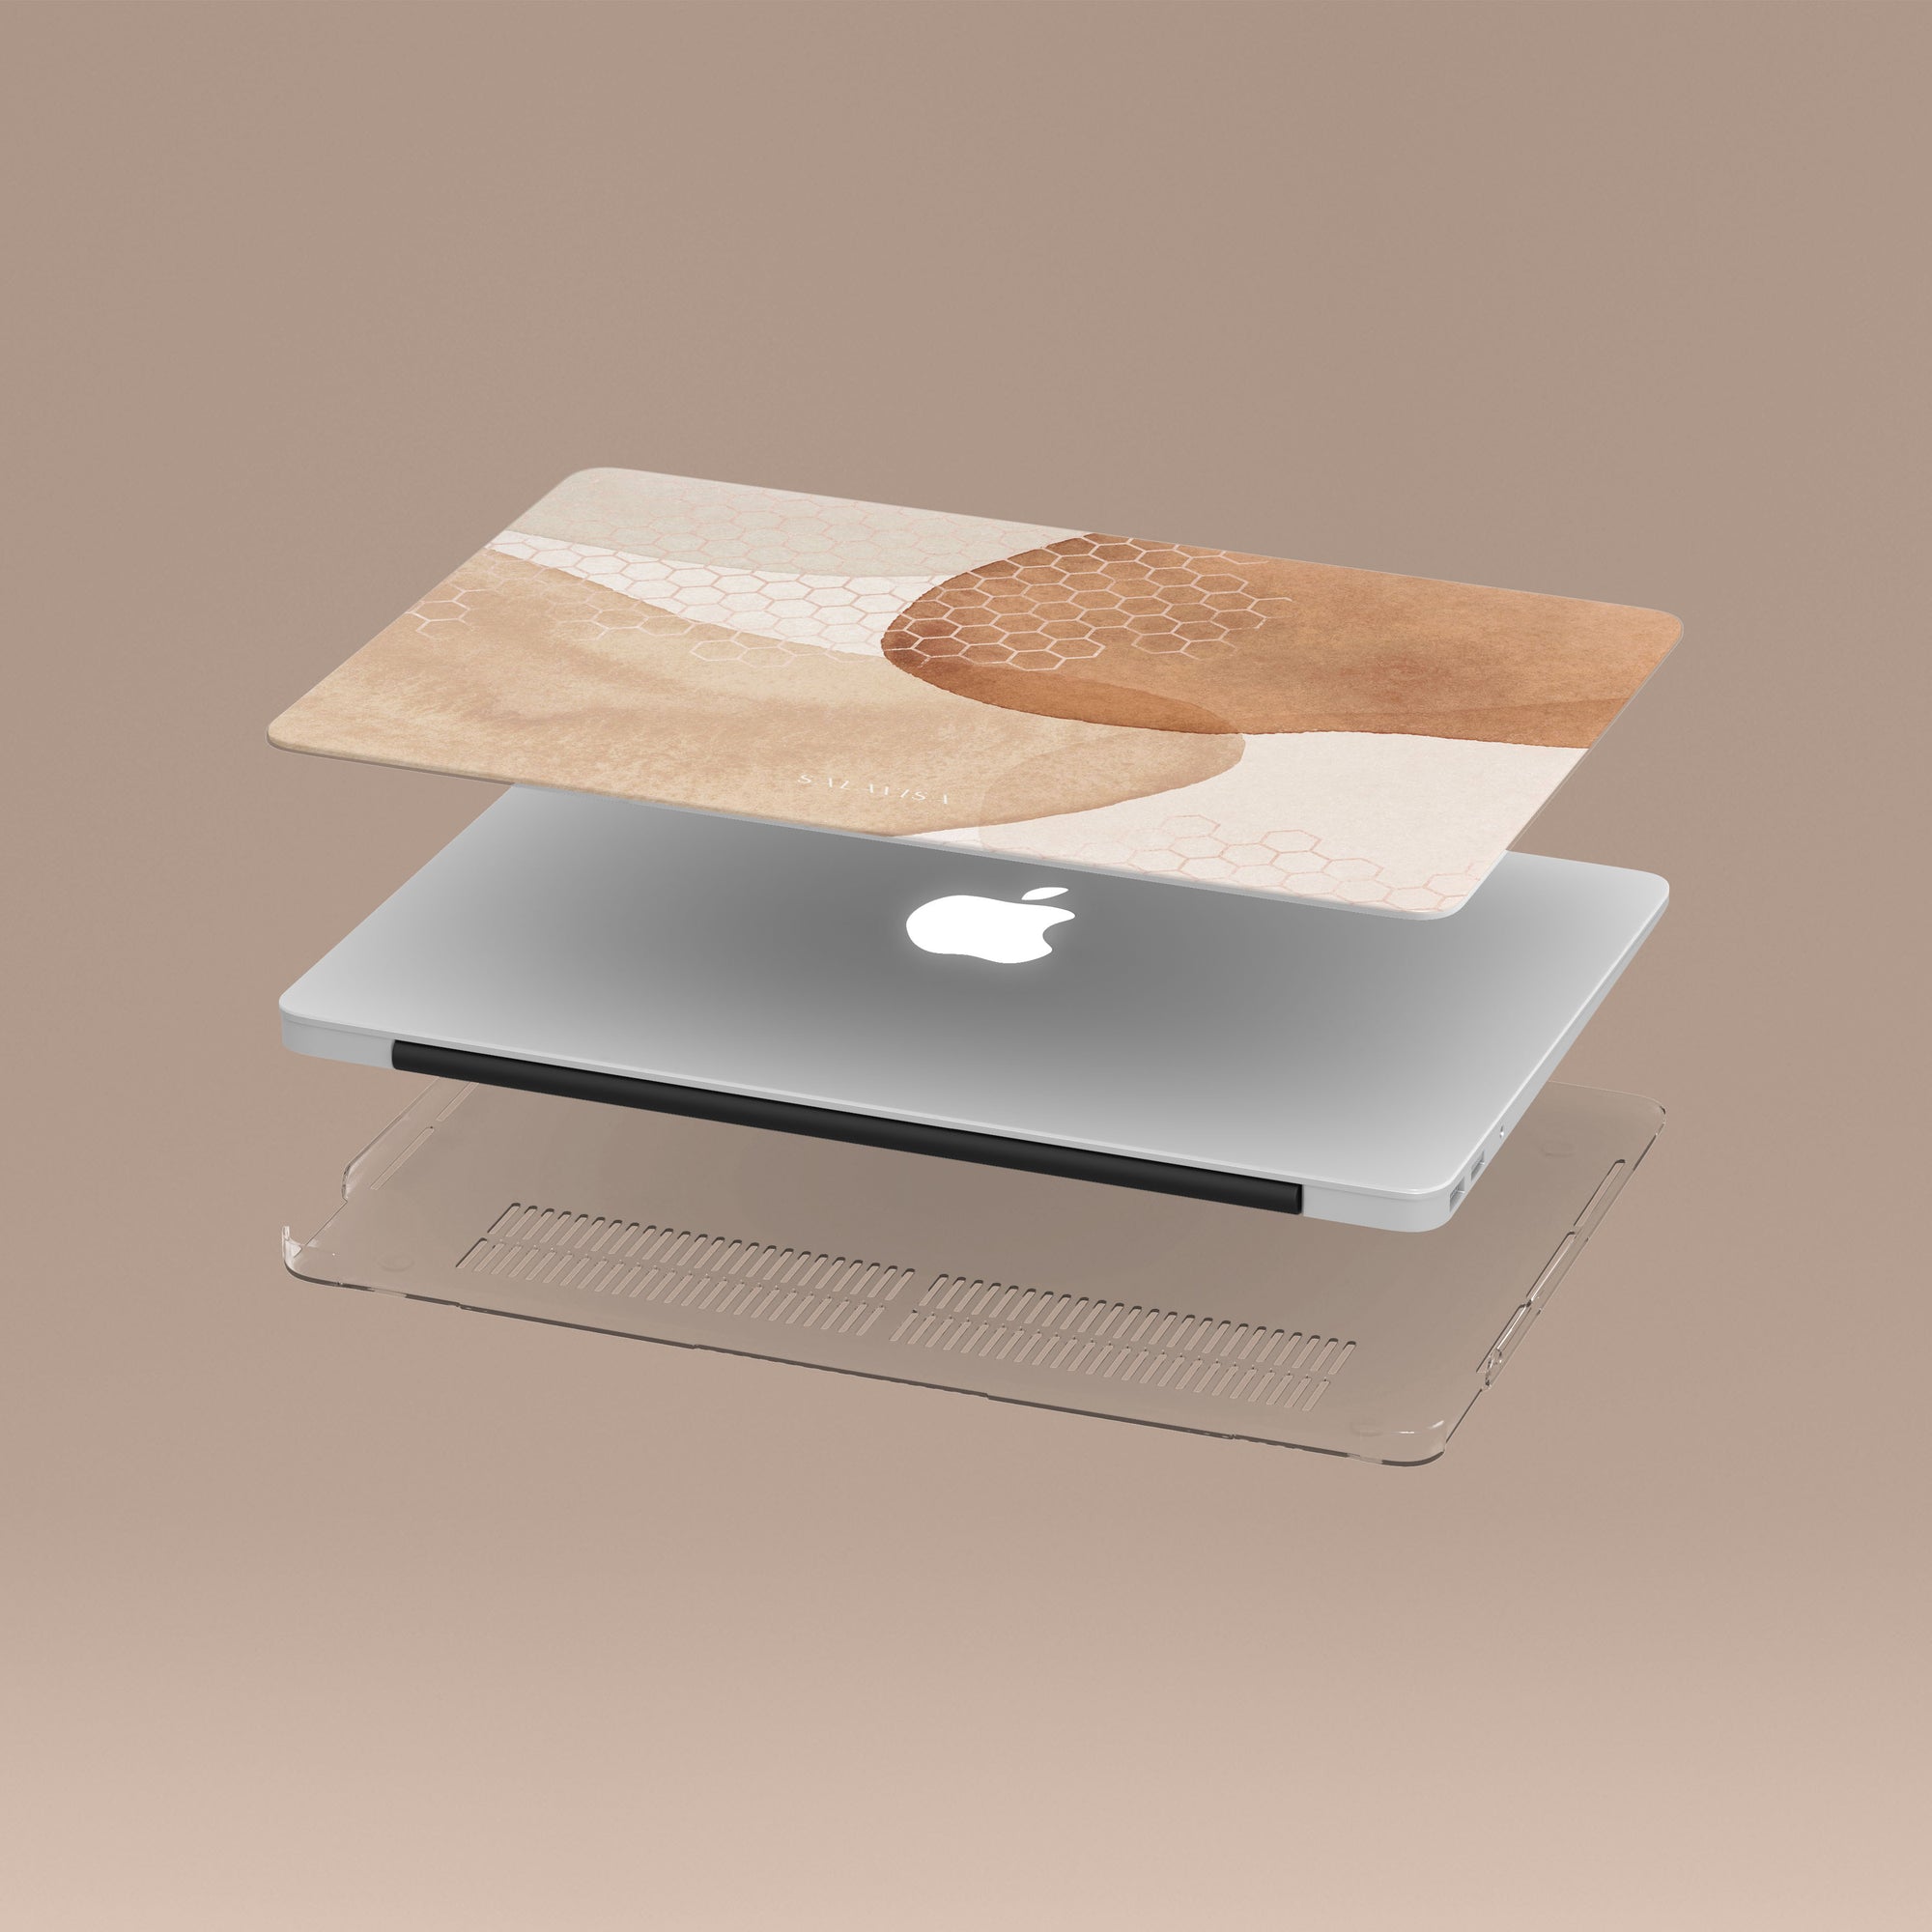 Beige Aesthetic MacBook Case MacBook Cases - SALAVISA